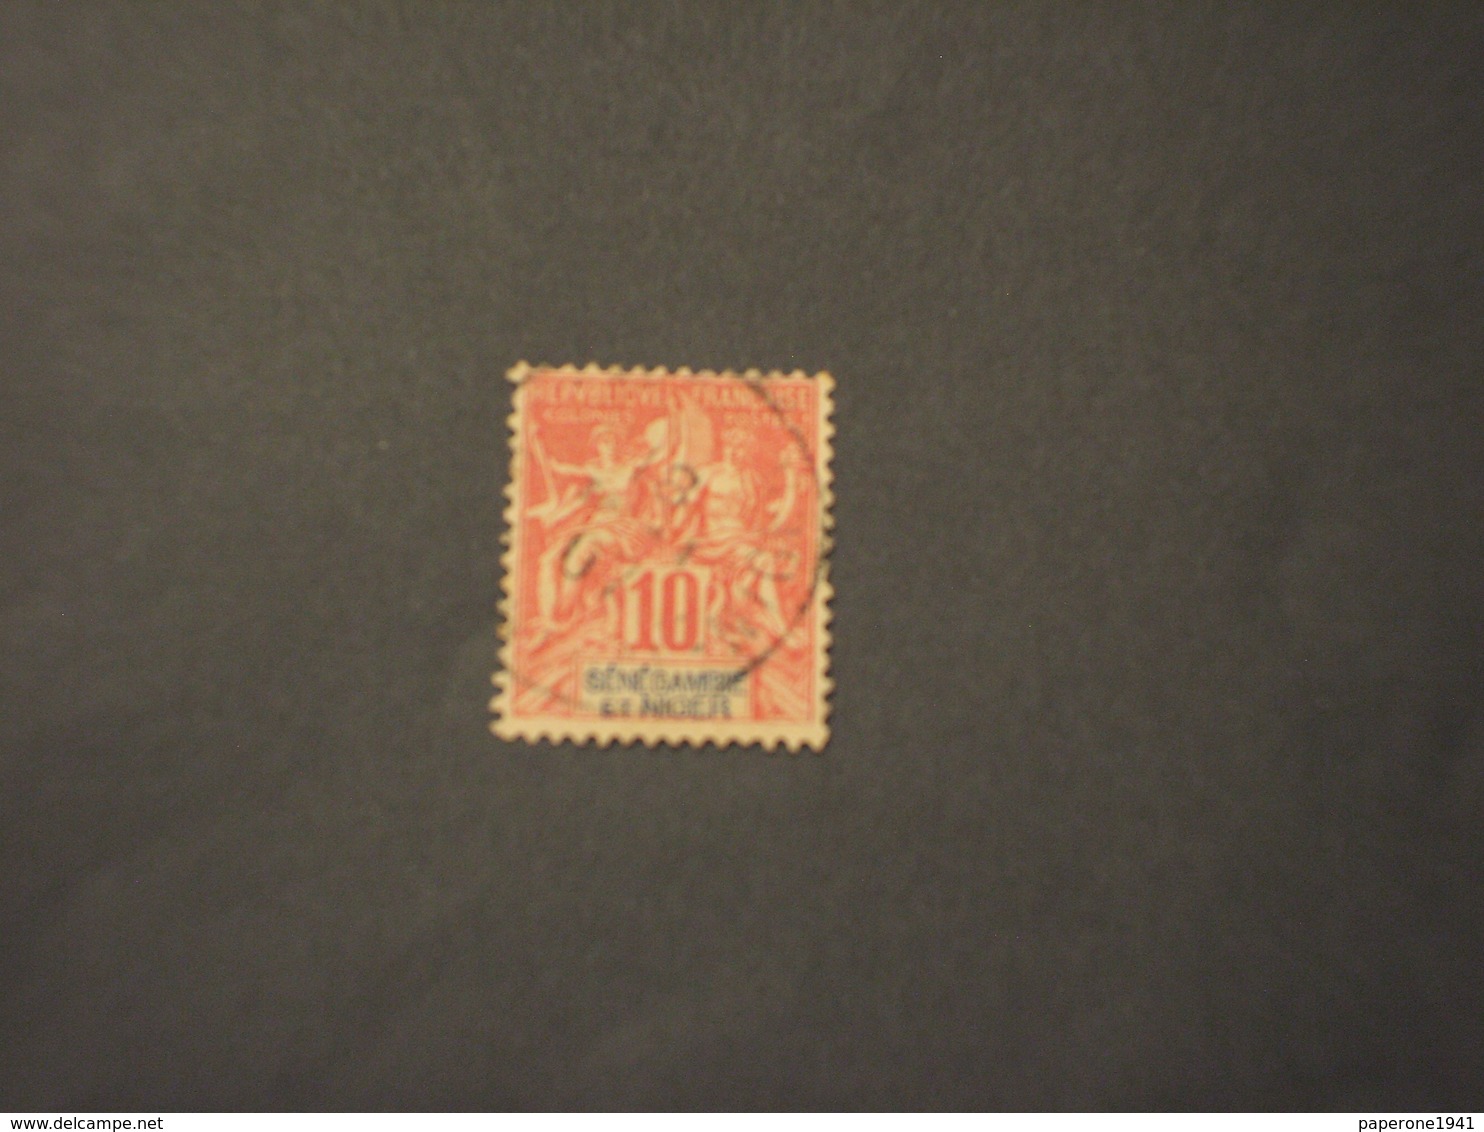 SENEGAL NIGER - 1903 ALLEGORIA  10 C. - TIMBRATO/USED - Gebraucht